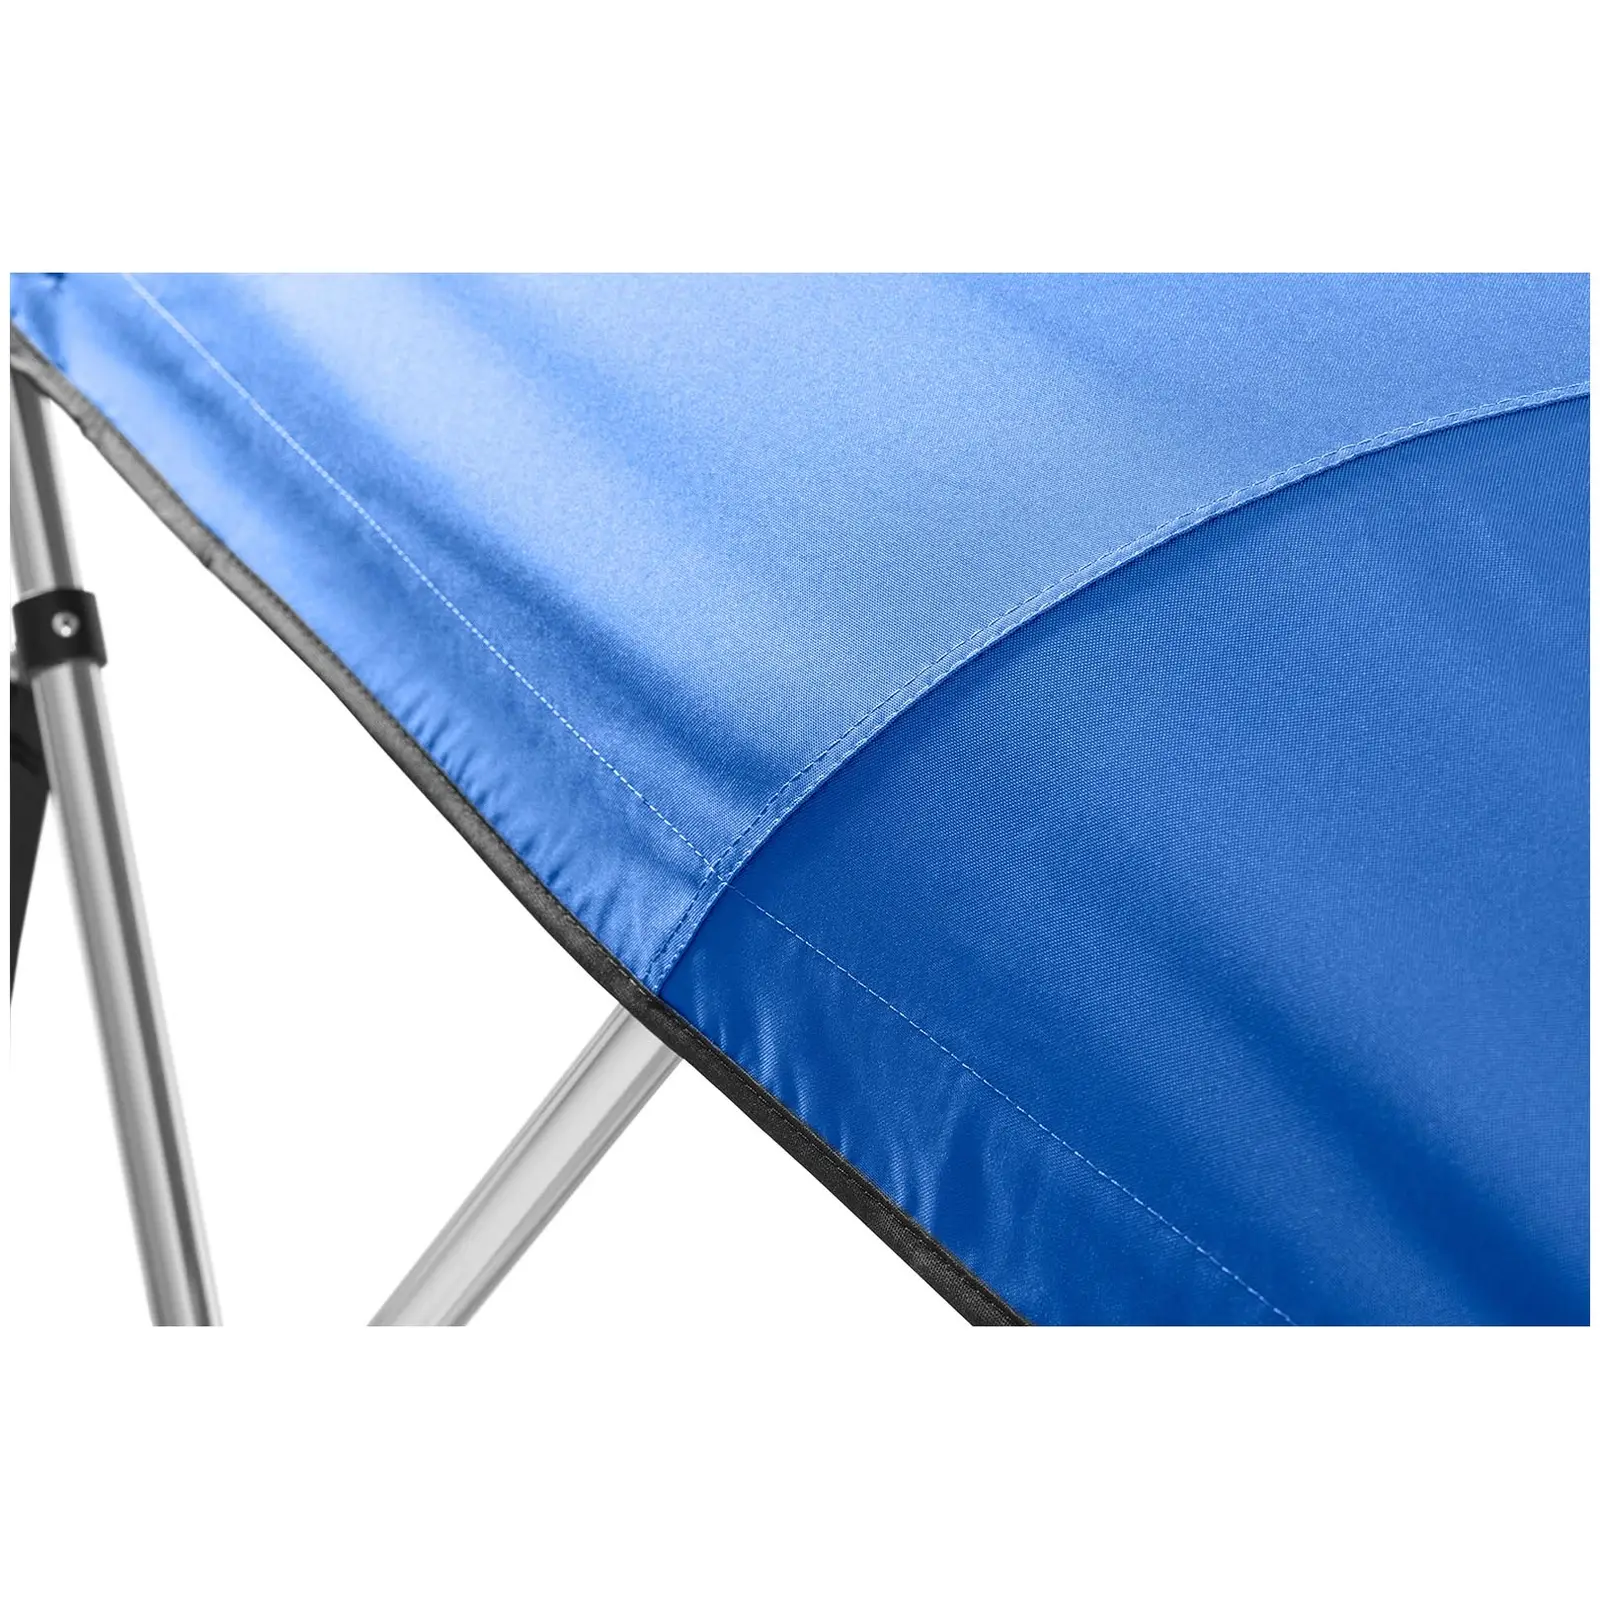 Горно покривало за лодка - 3 дъги - 183 x (185-198) x 116 (ДxШxВ) см - кобалтово синьо